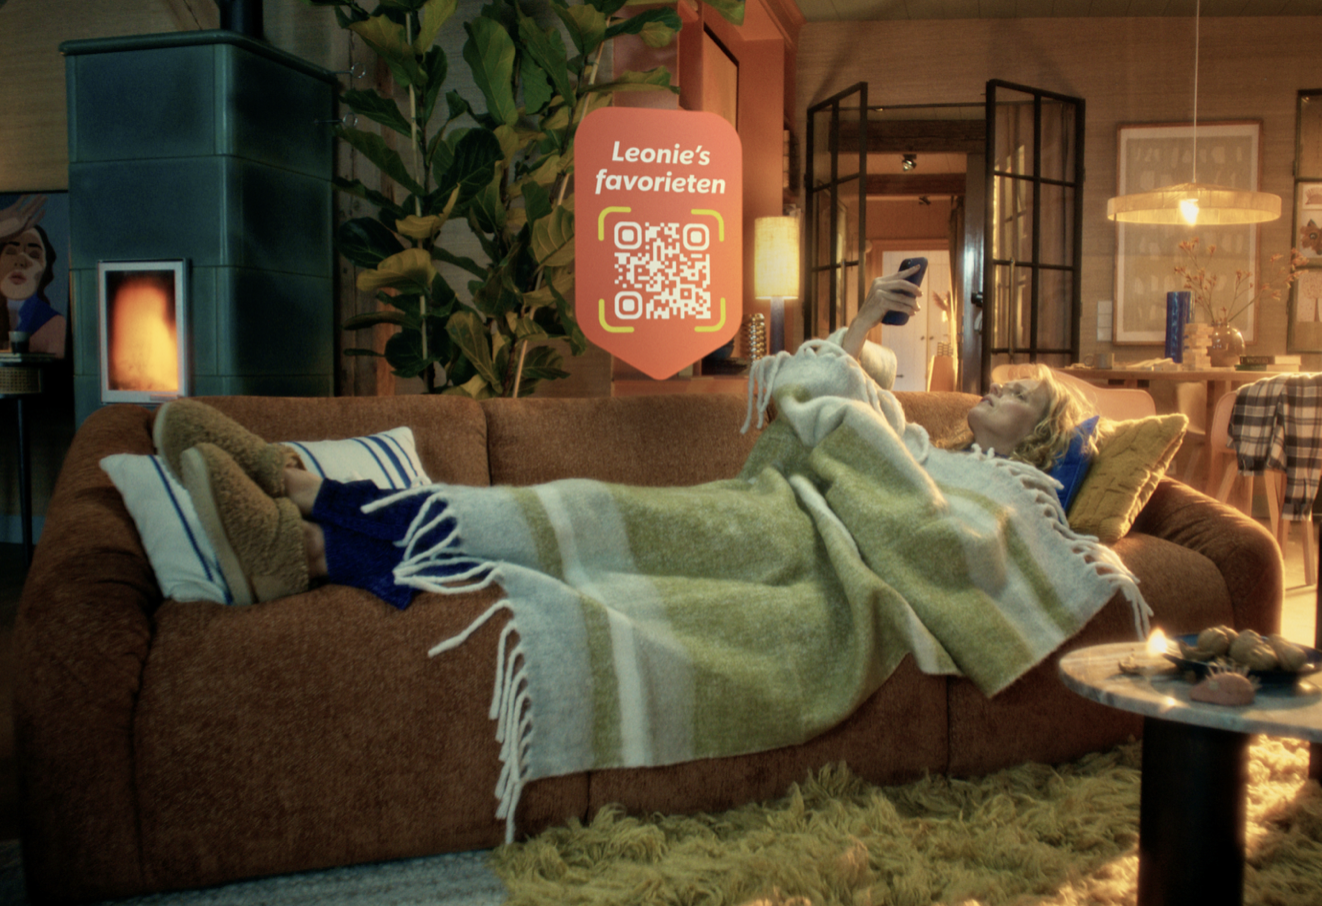 Wehkamp lanceert nieuwe positionering met 100% shoppable campagne